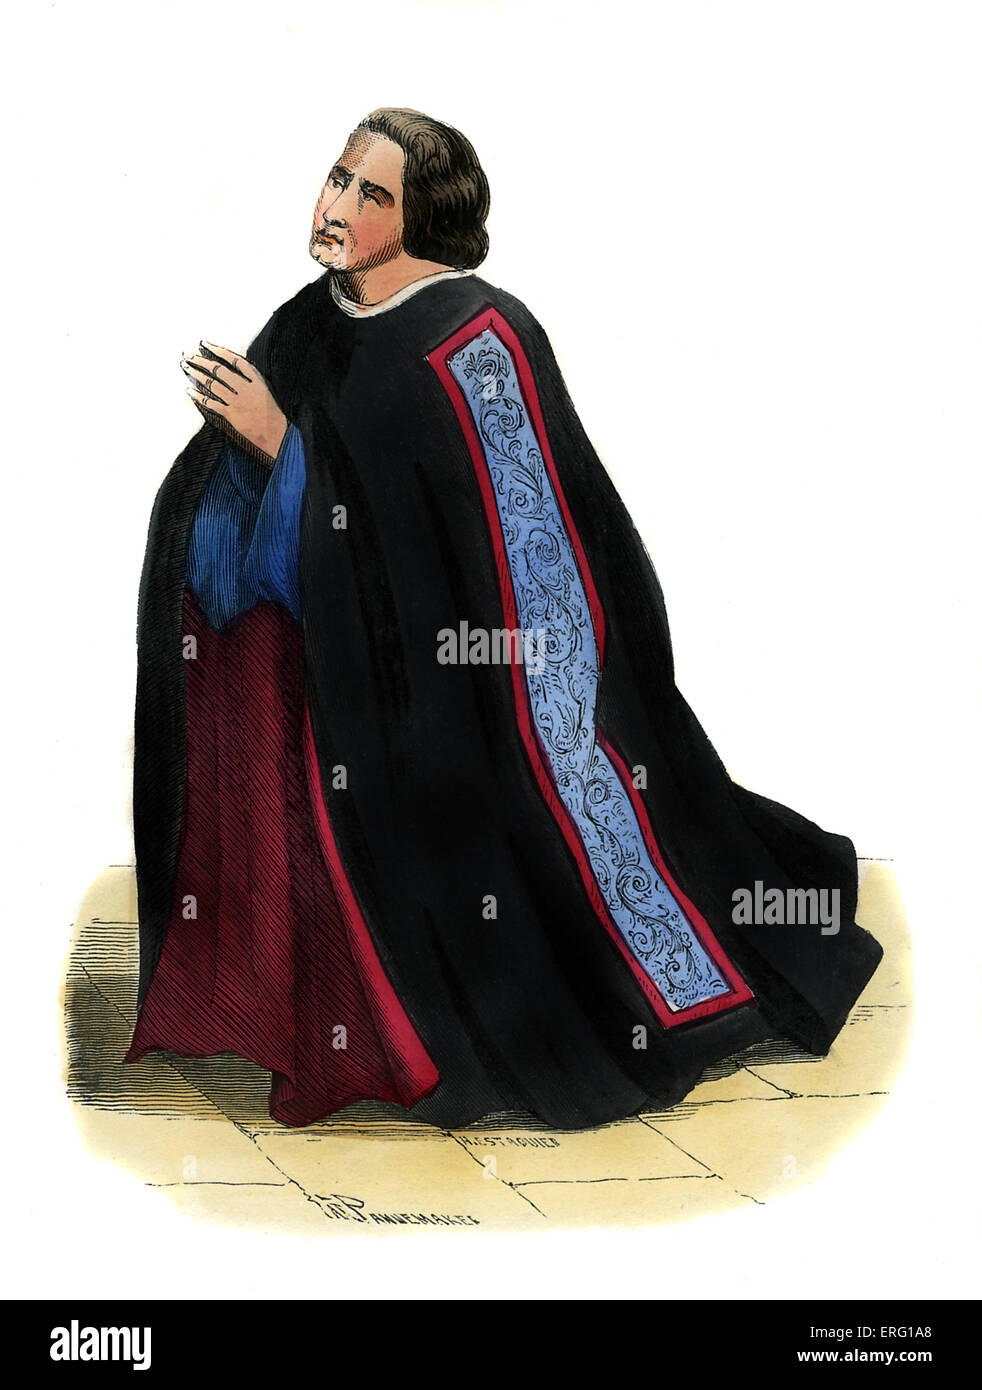 Französische Dekan (Doyen) der Händler Corporation - Kostüm aus dem 15. Jahrhundert. Gezeigt in kniende Position tragen schwarzen Robe ausgekleidet Stockfoto